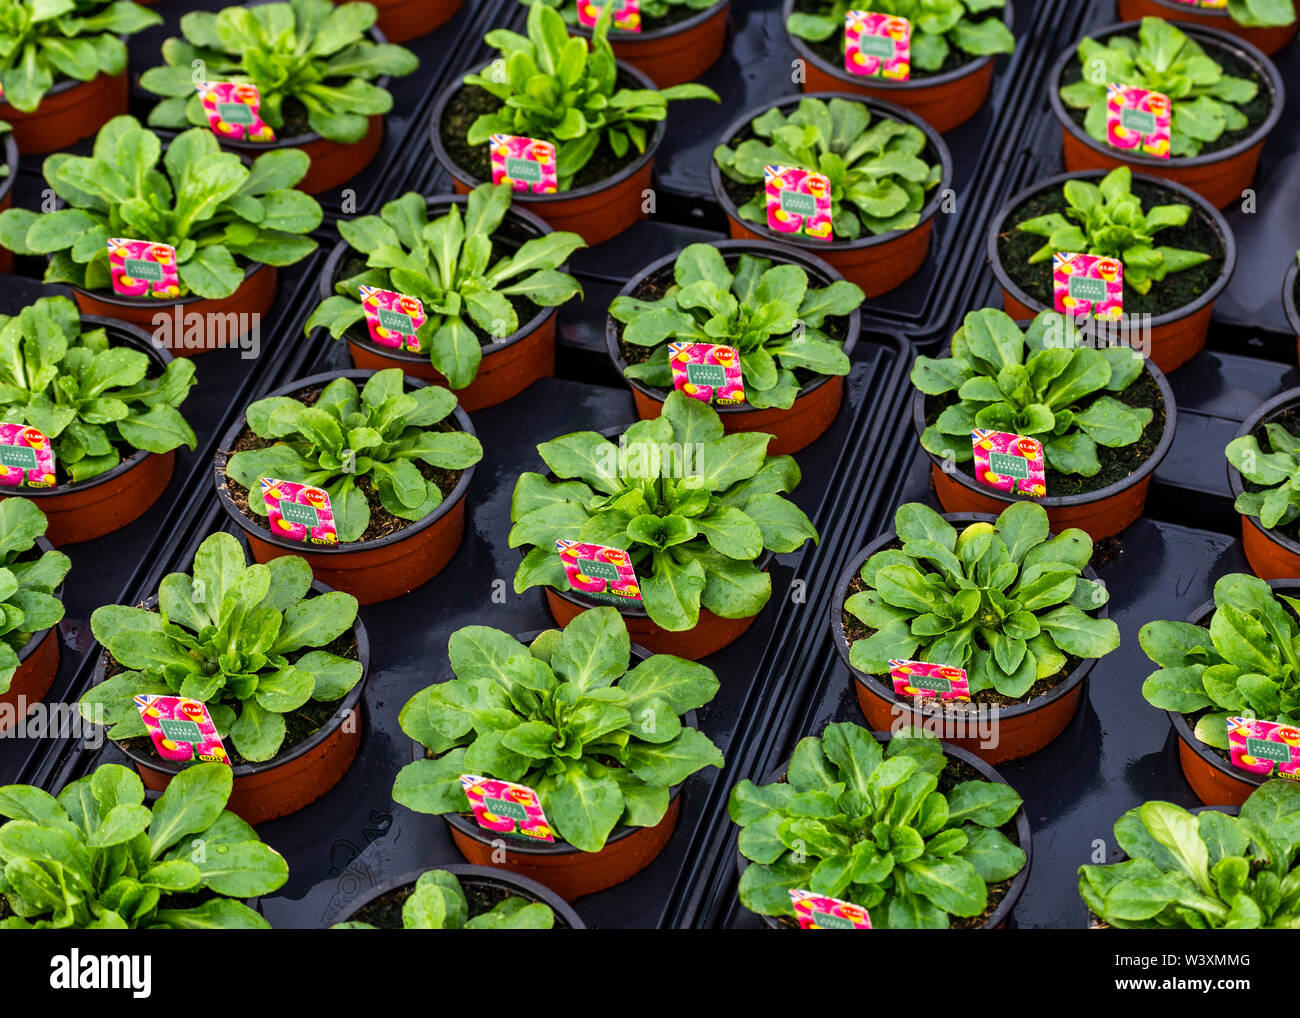 Bunte Blume Pflanzen in Töpfen auf der Gärtnerei UK Stockfoto